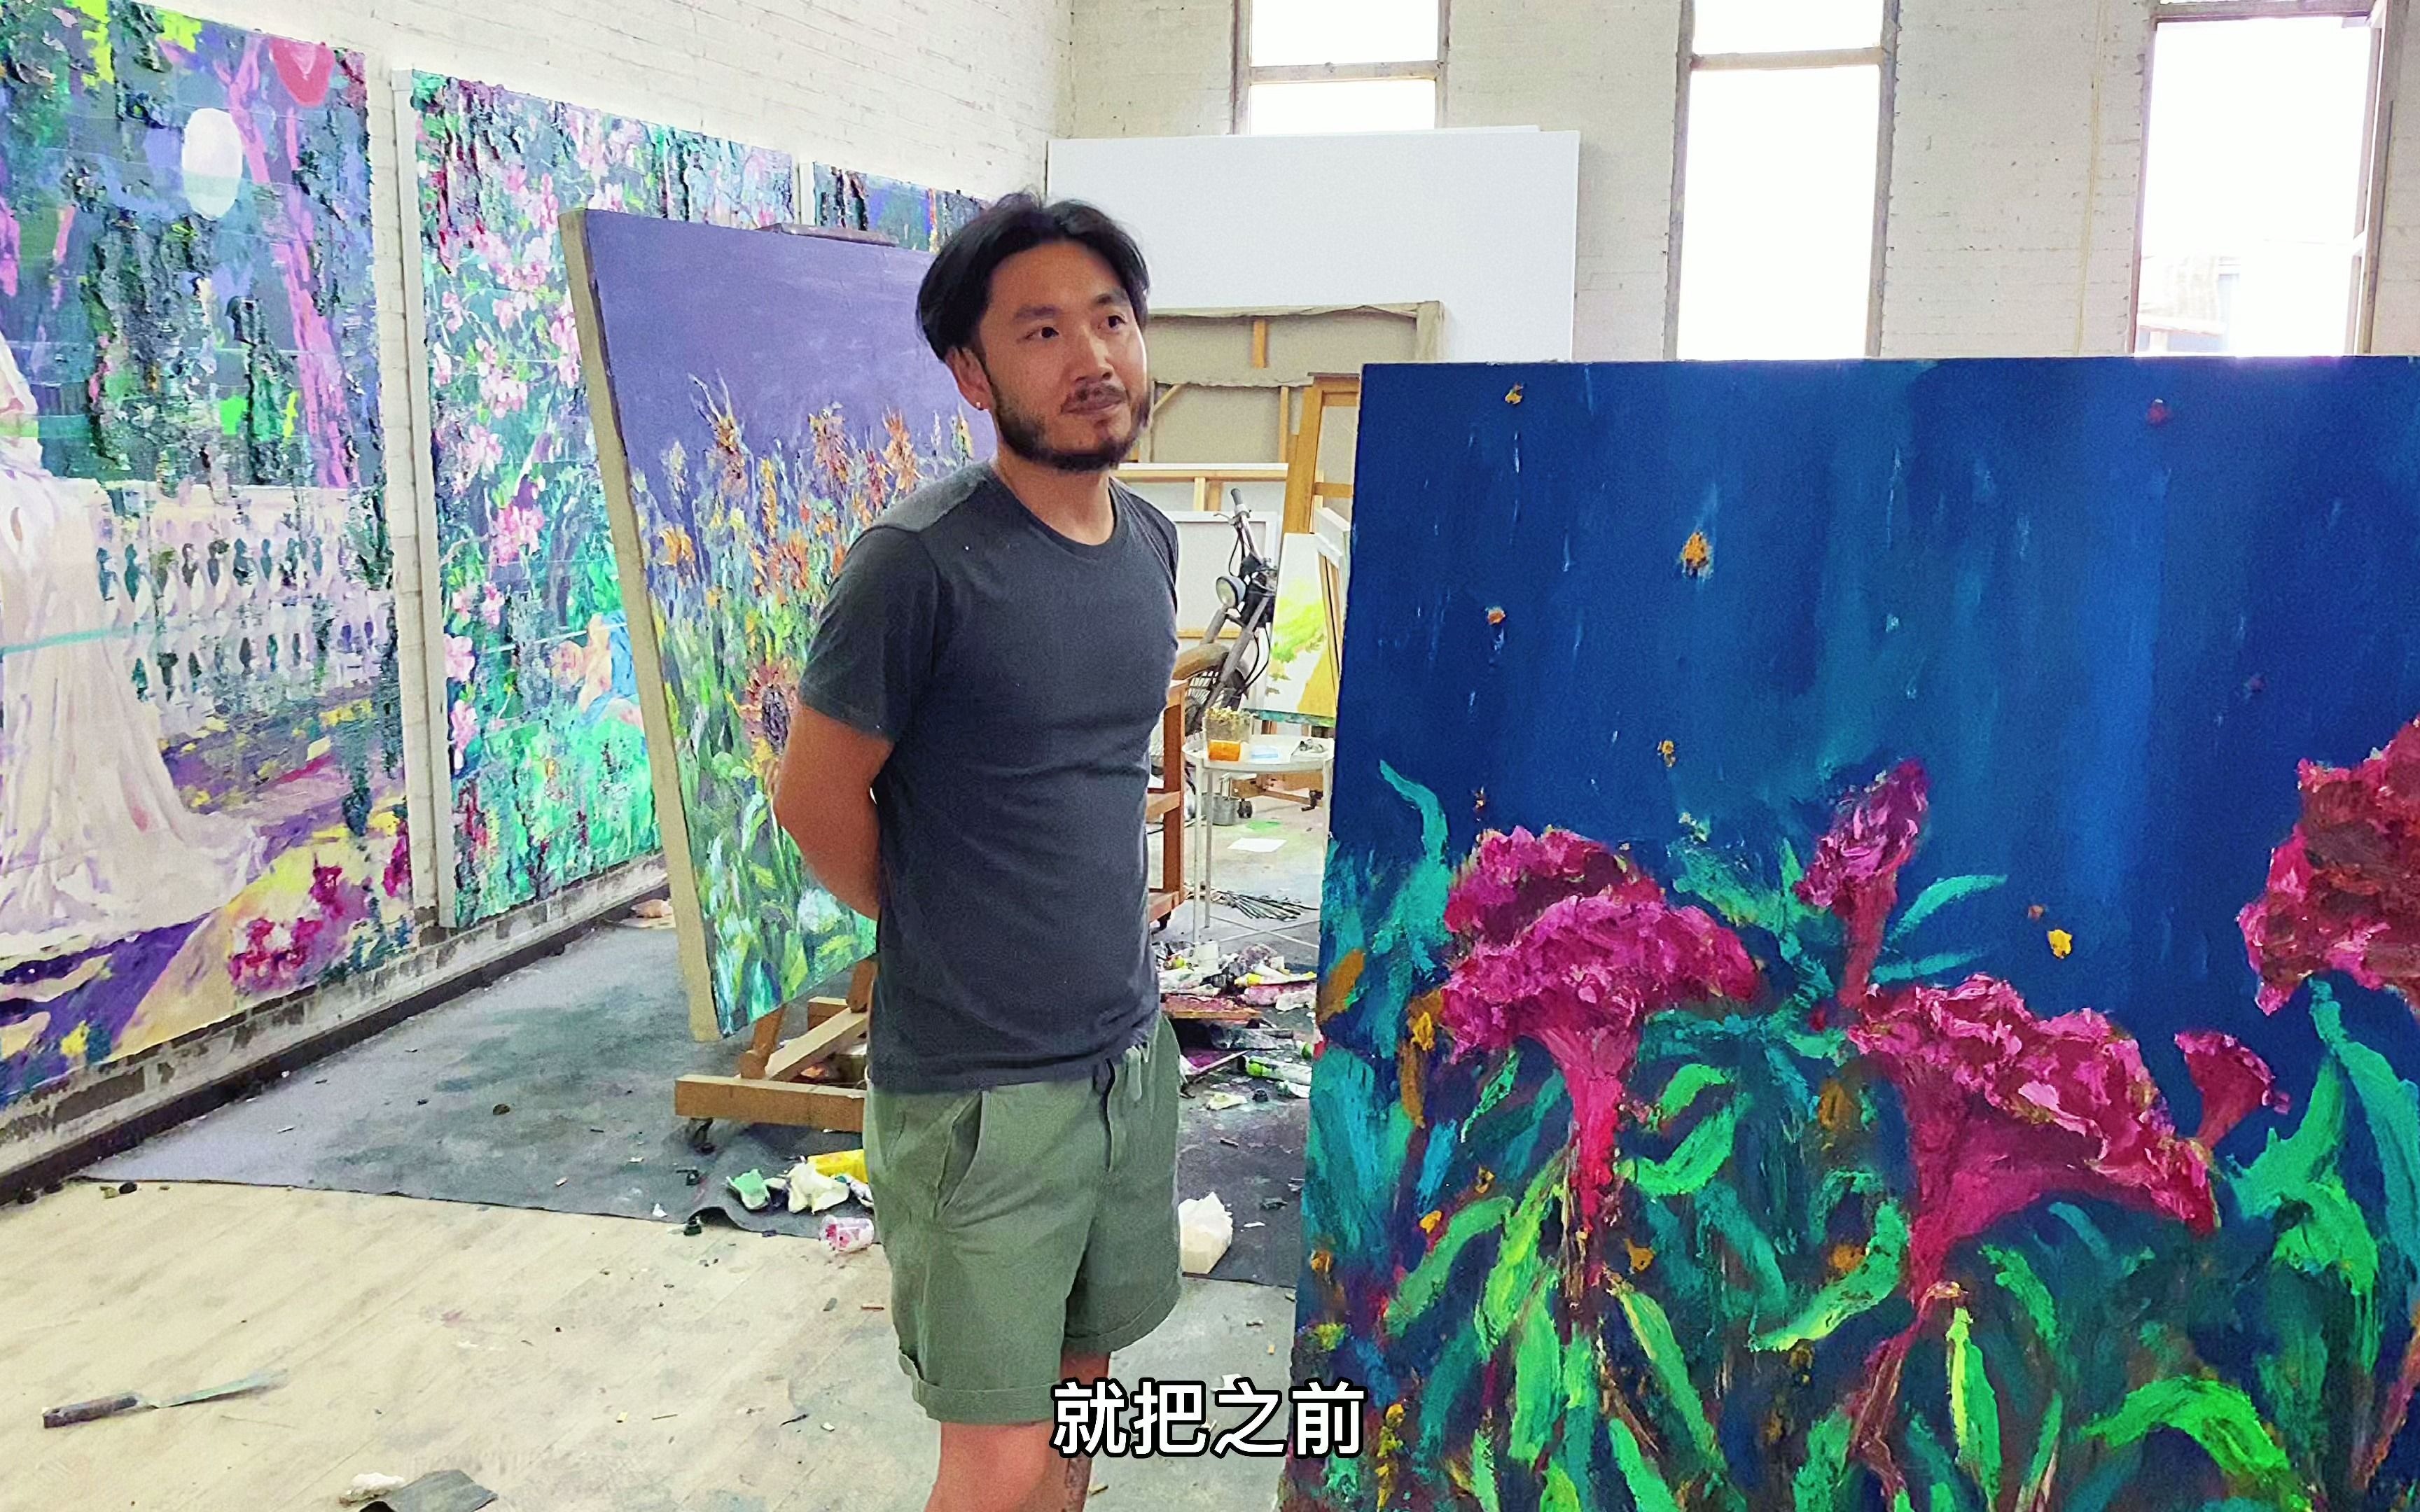 几乎每天熬到深夜，半年画了一屋子画，北京少见的勤奋画家